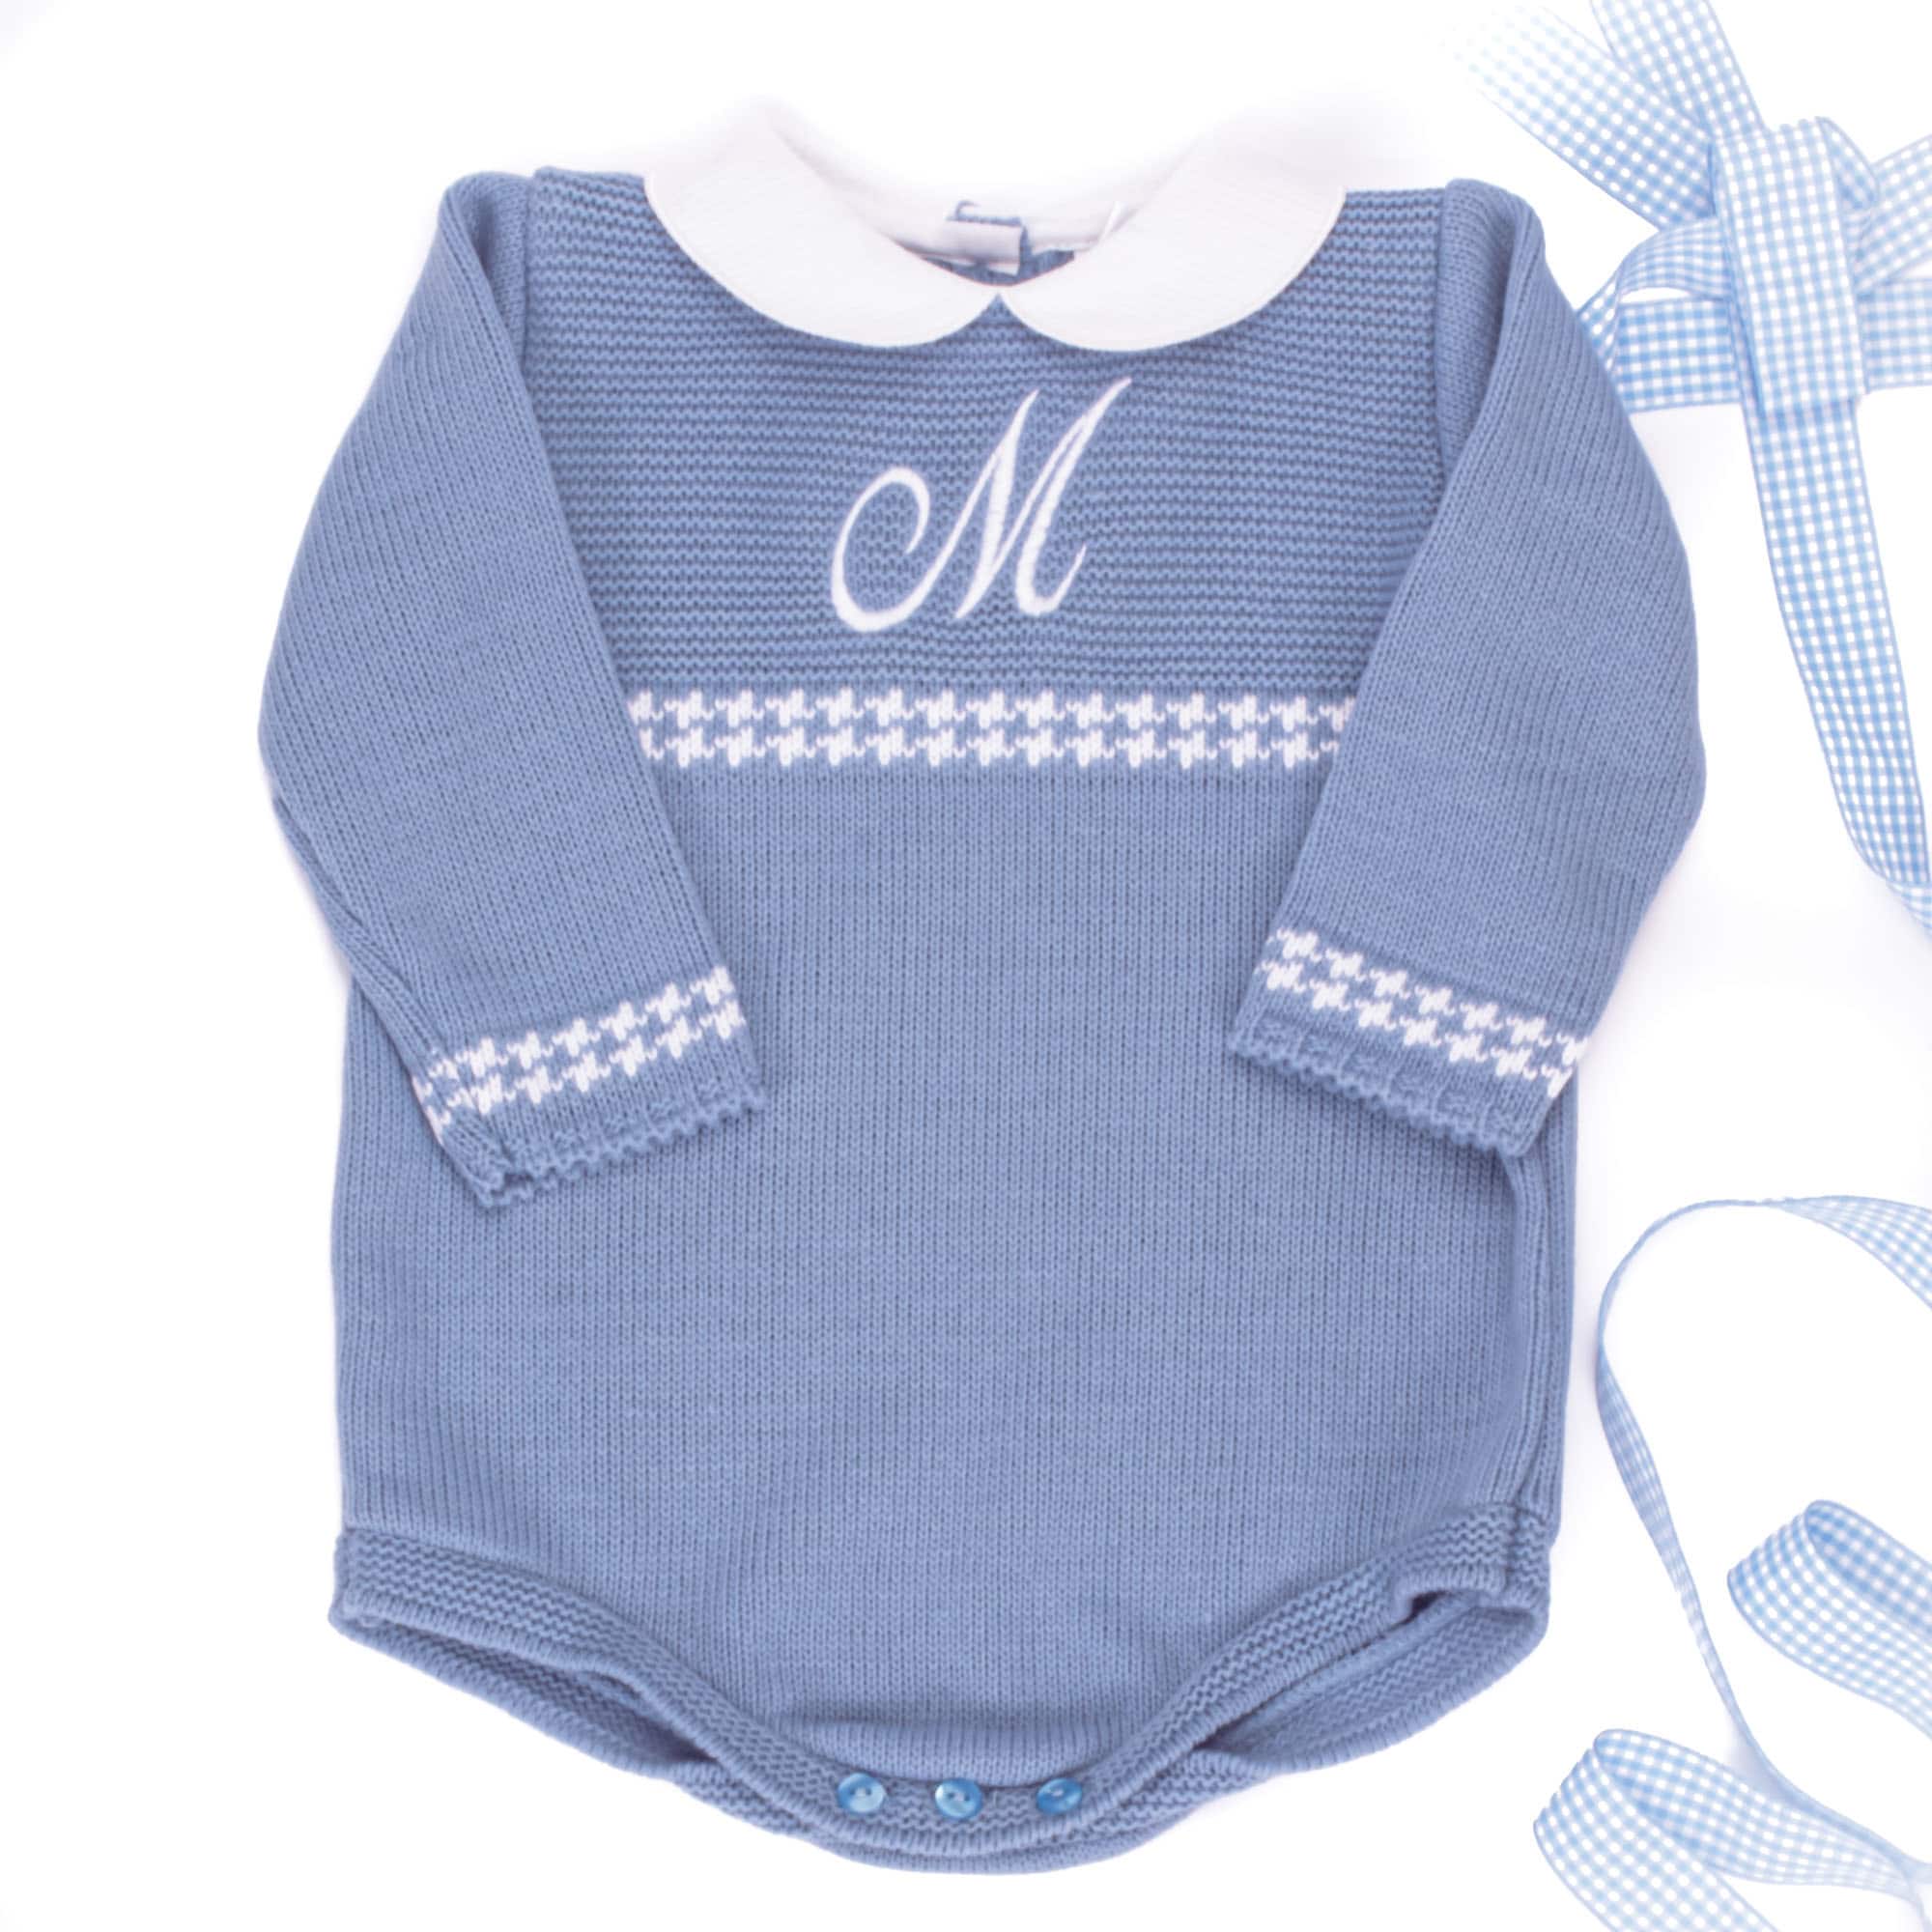 personalised-baby-clothing-305.jpg